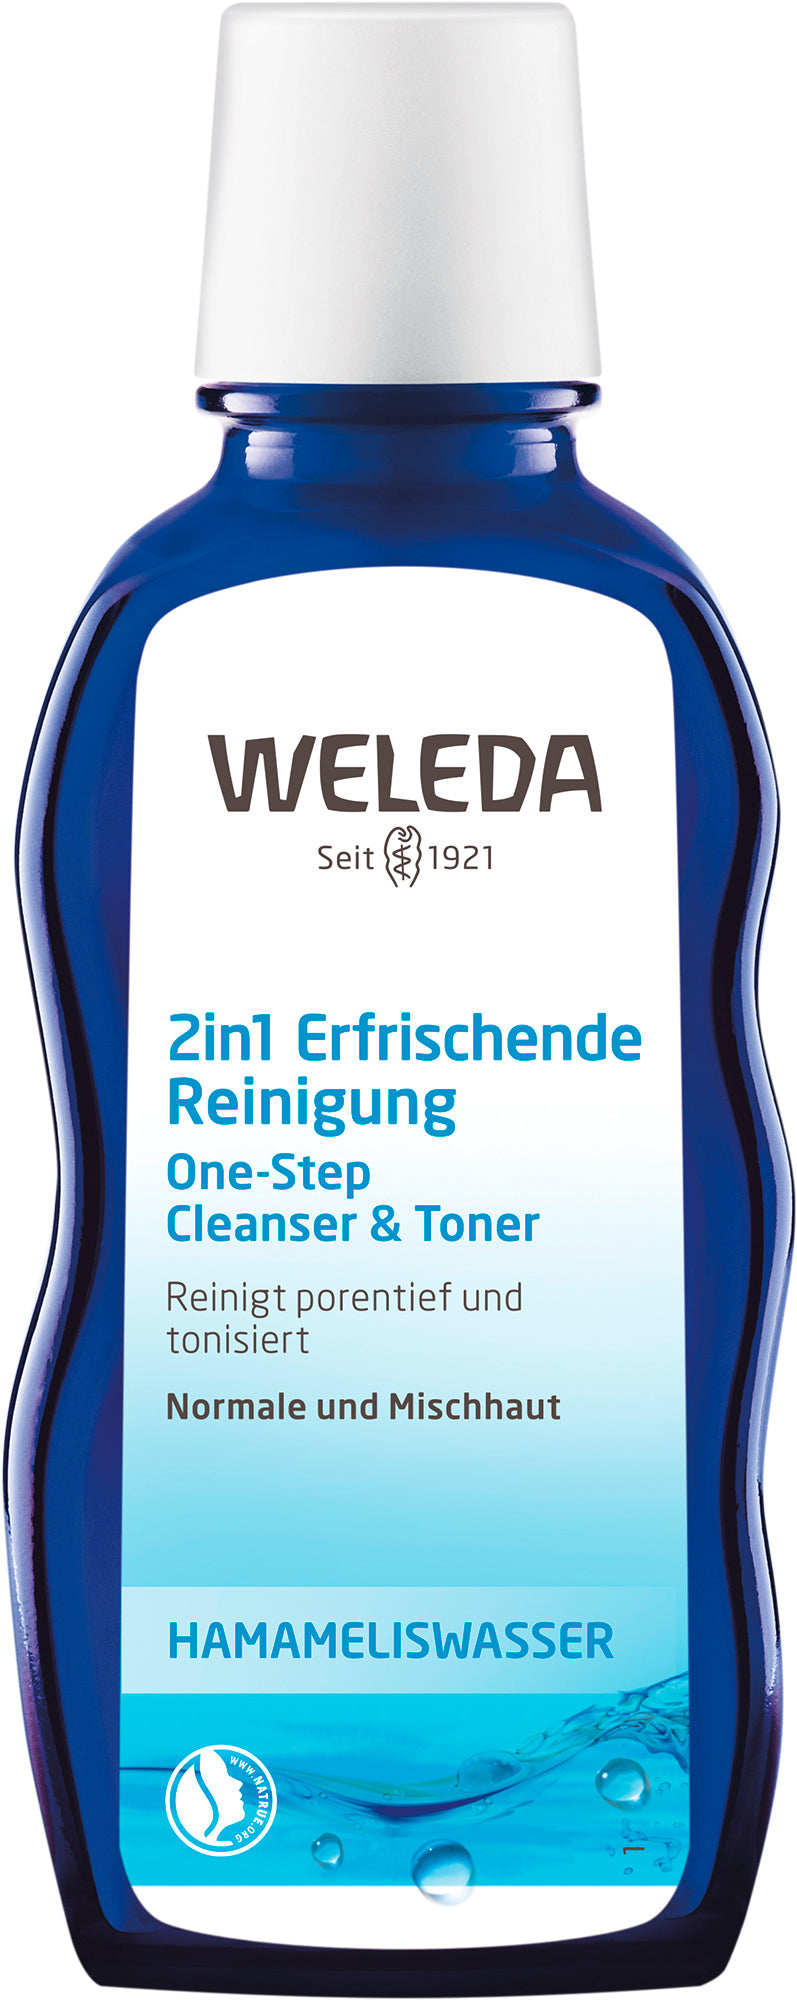 Weleda - Erfrischende 2in1 Reinigung 100 ml